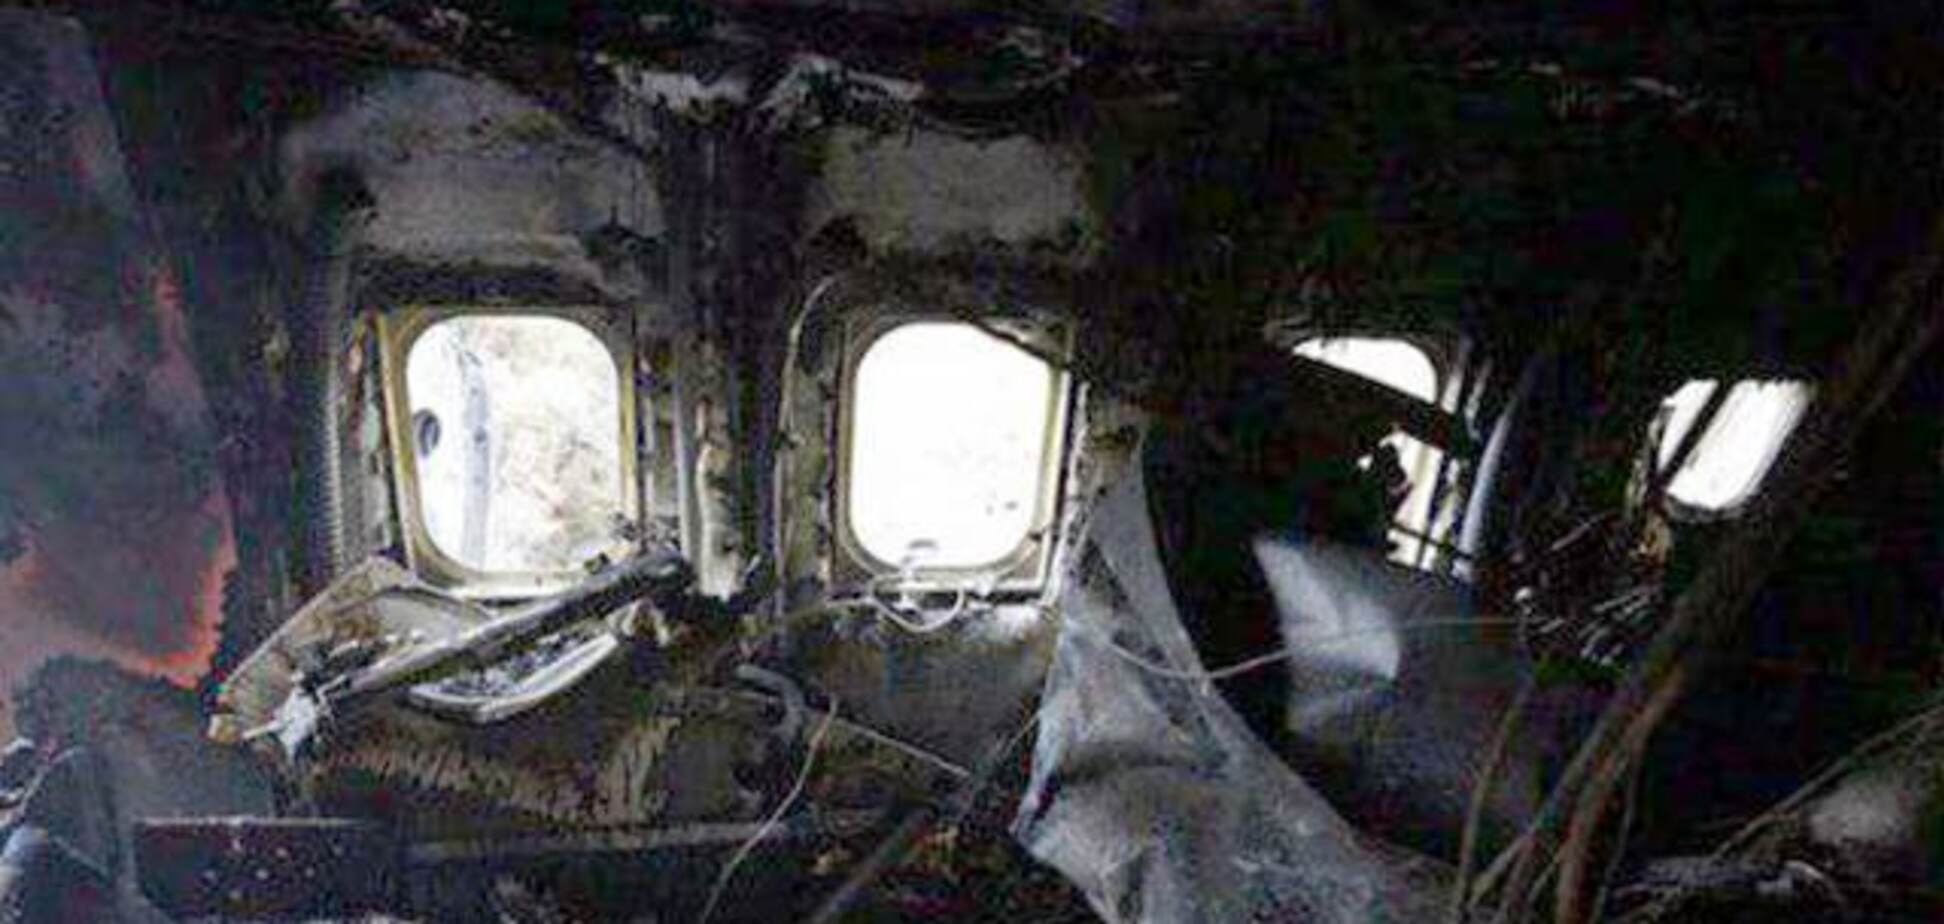 Крушение Boeing под Тегераном: появились жуткие кадры из самолета